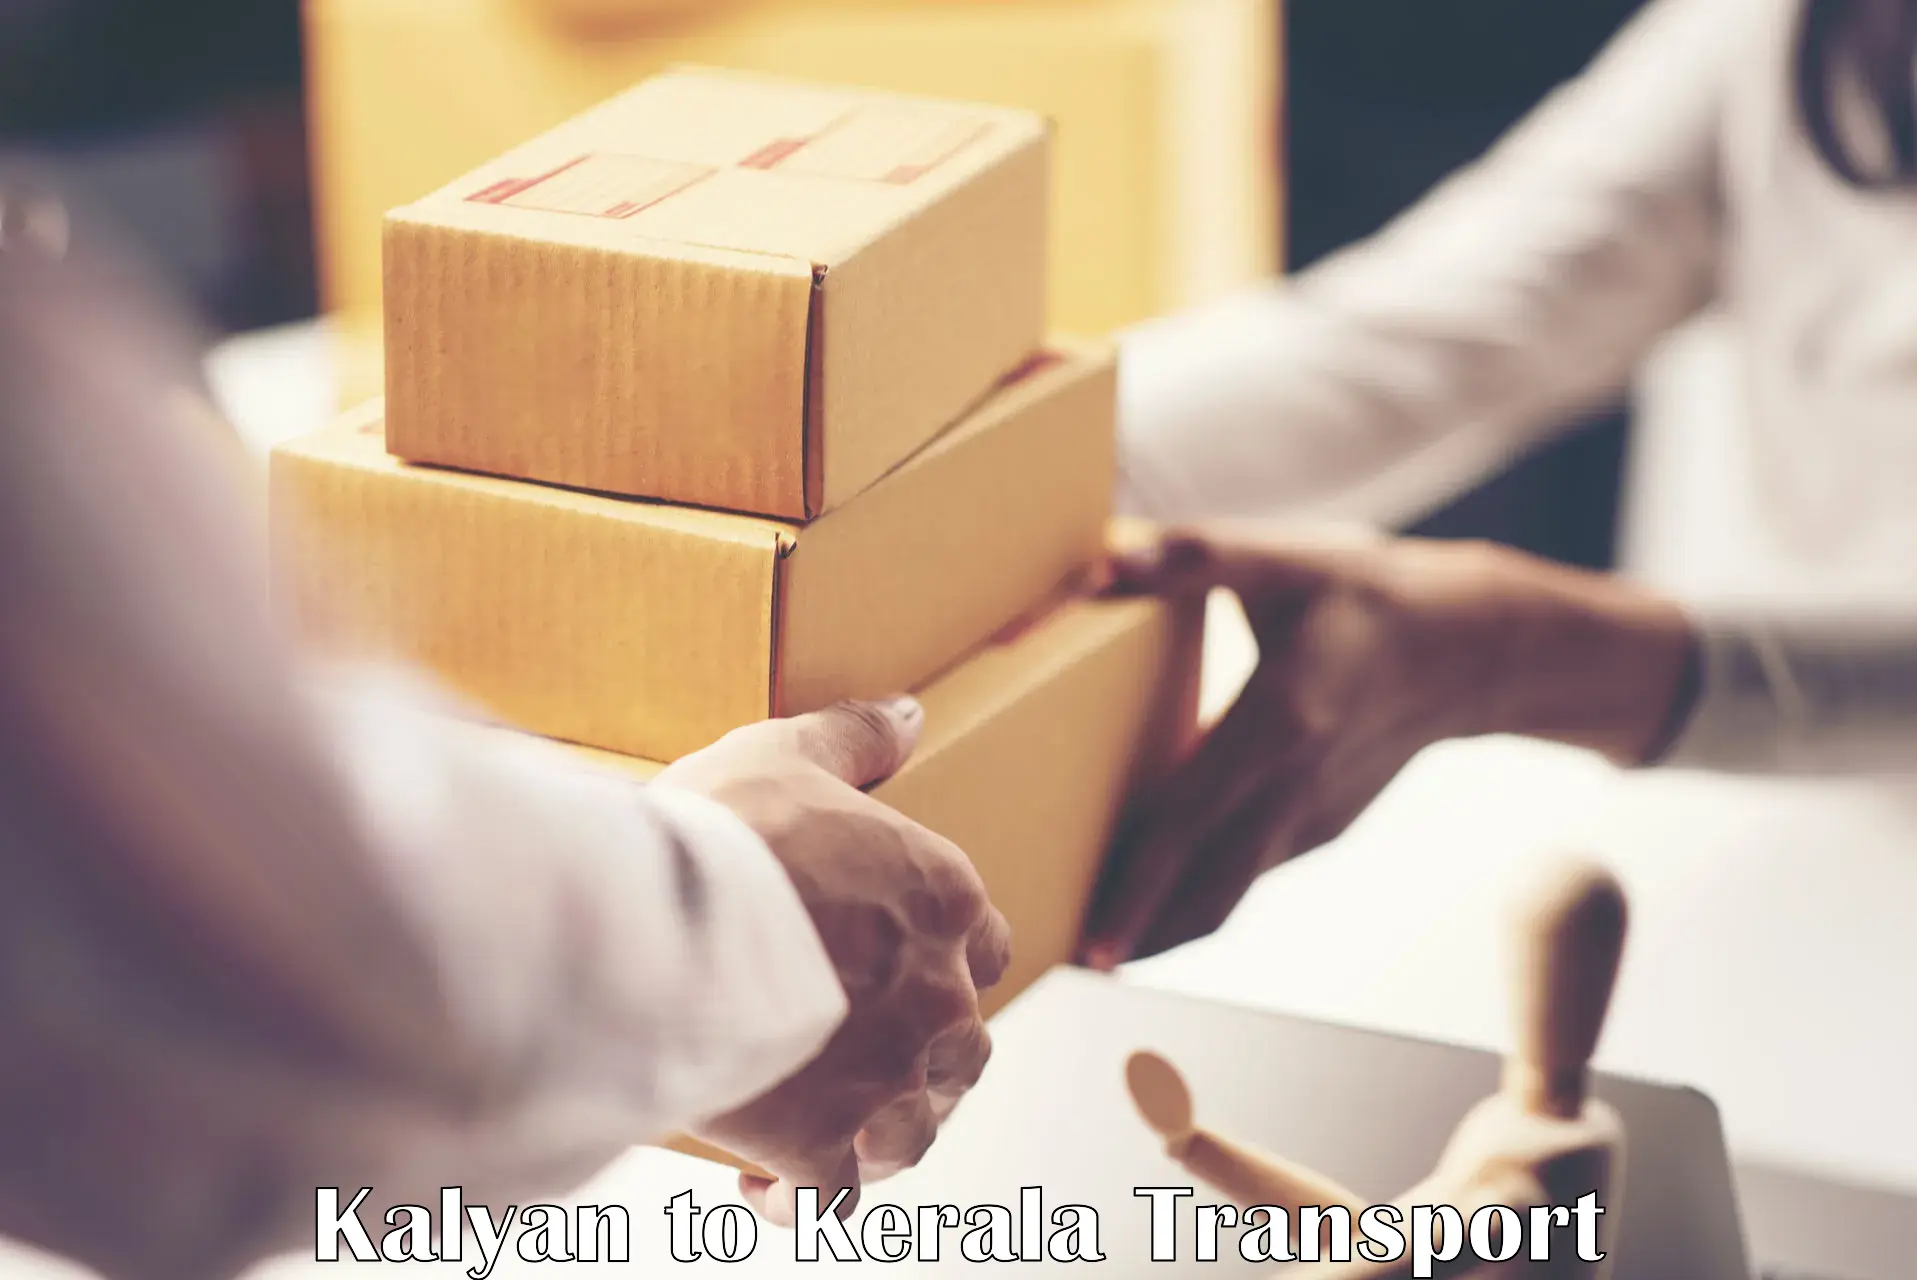 International cargo transportation services Kalyan to Thrissur